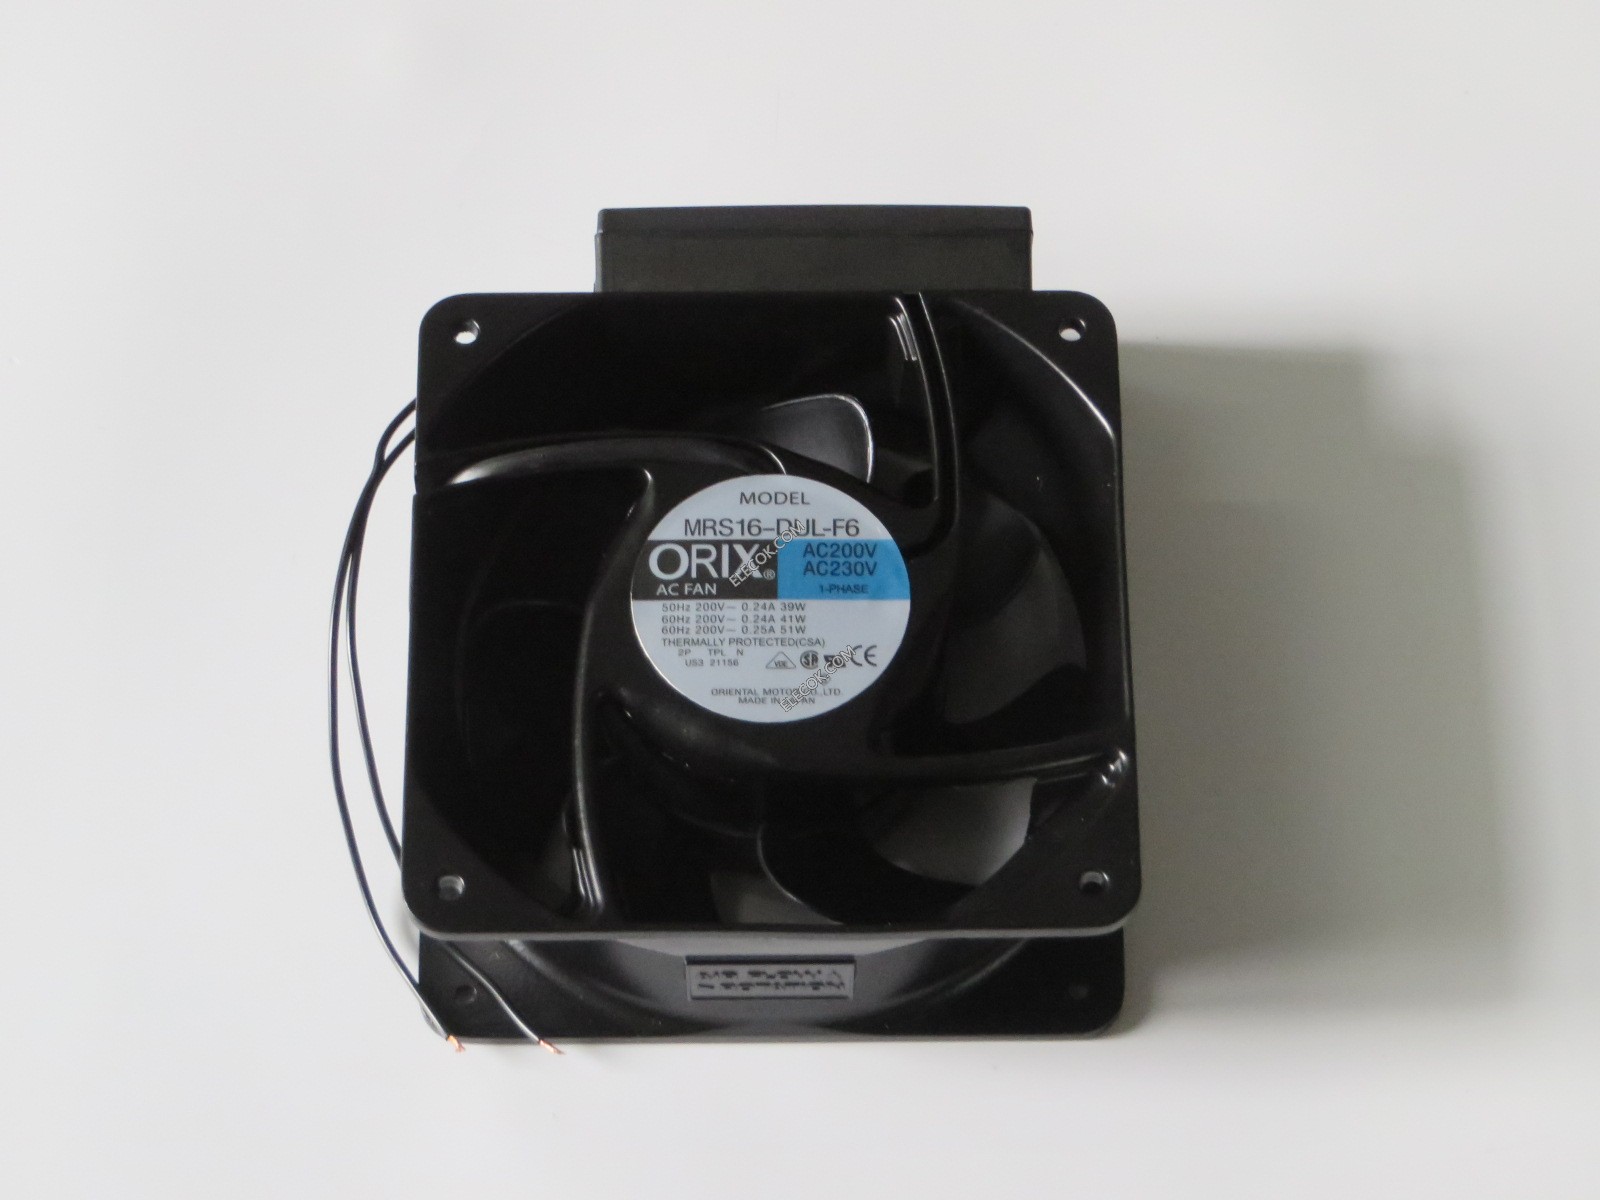 ORIX MRS16-D Daul ball cooling fan AC200V-230V 0.24A/0.25A with sensor #MH03 QL 